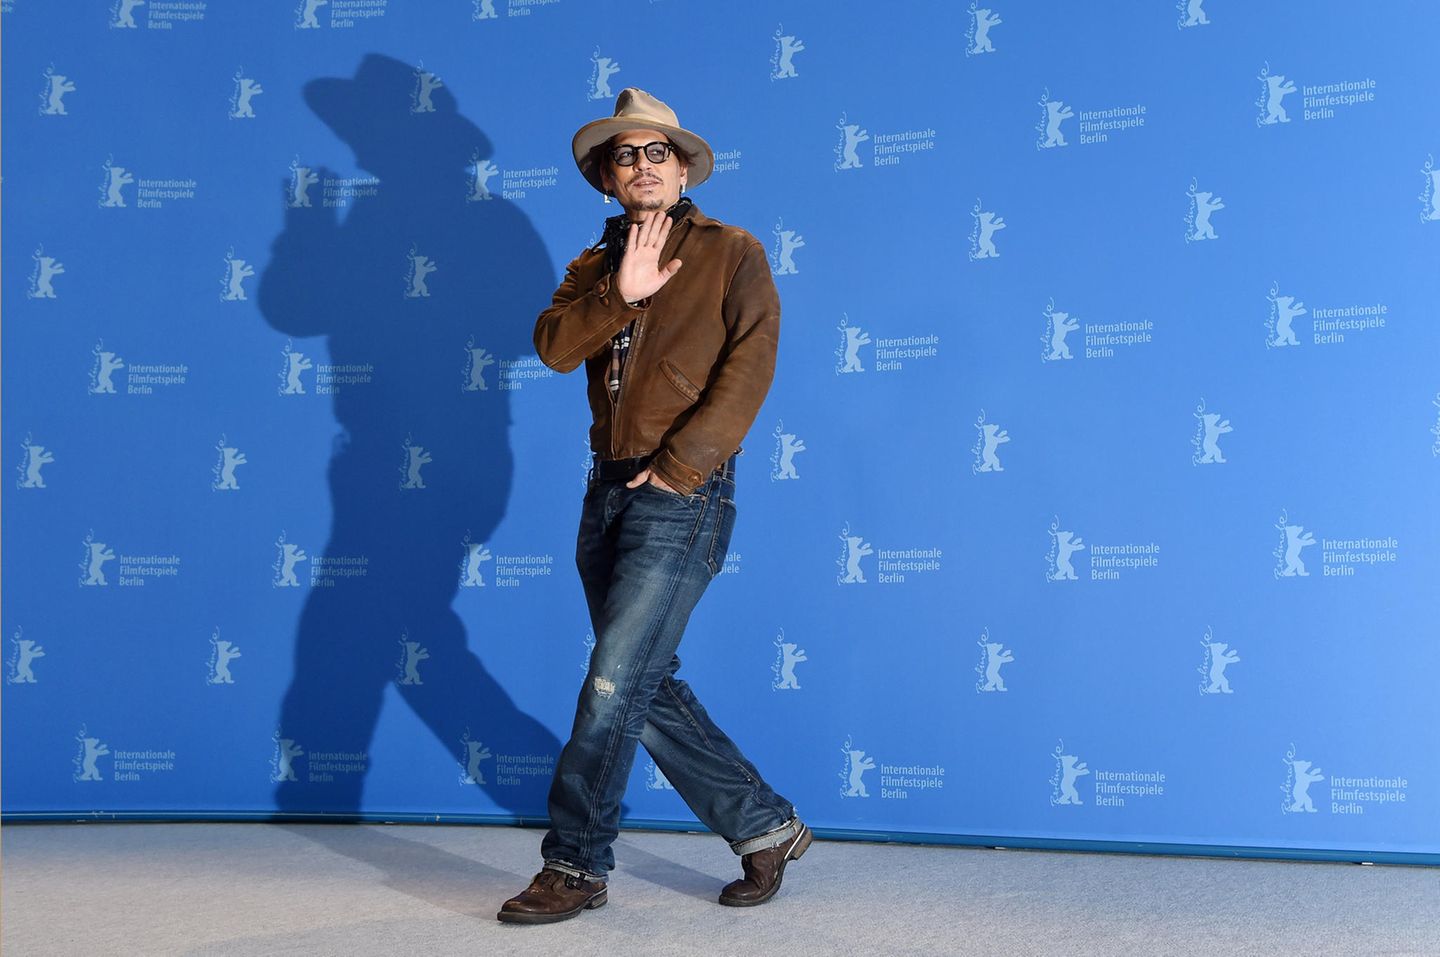 Howdy, Johnny! Mit Charme und Cowboy-Look präsentiert sich der Hollywood-Star beim Pressetermin seines Films "Minimata".